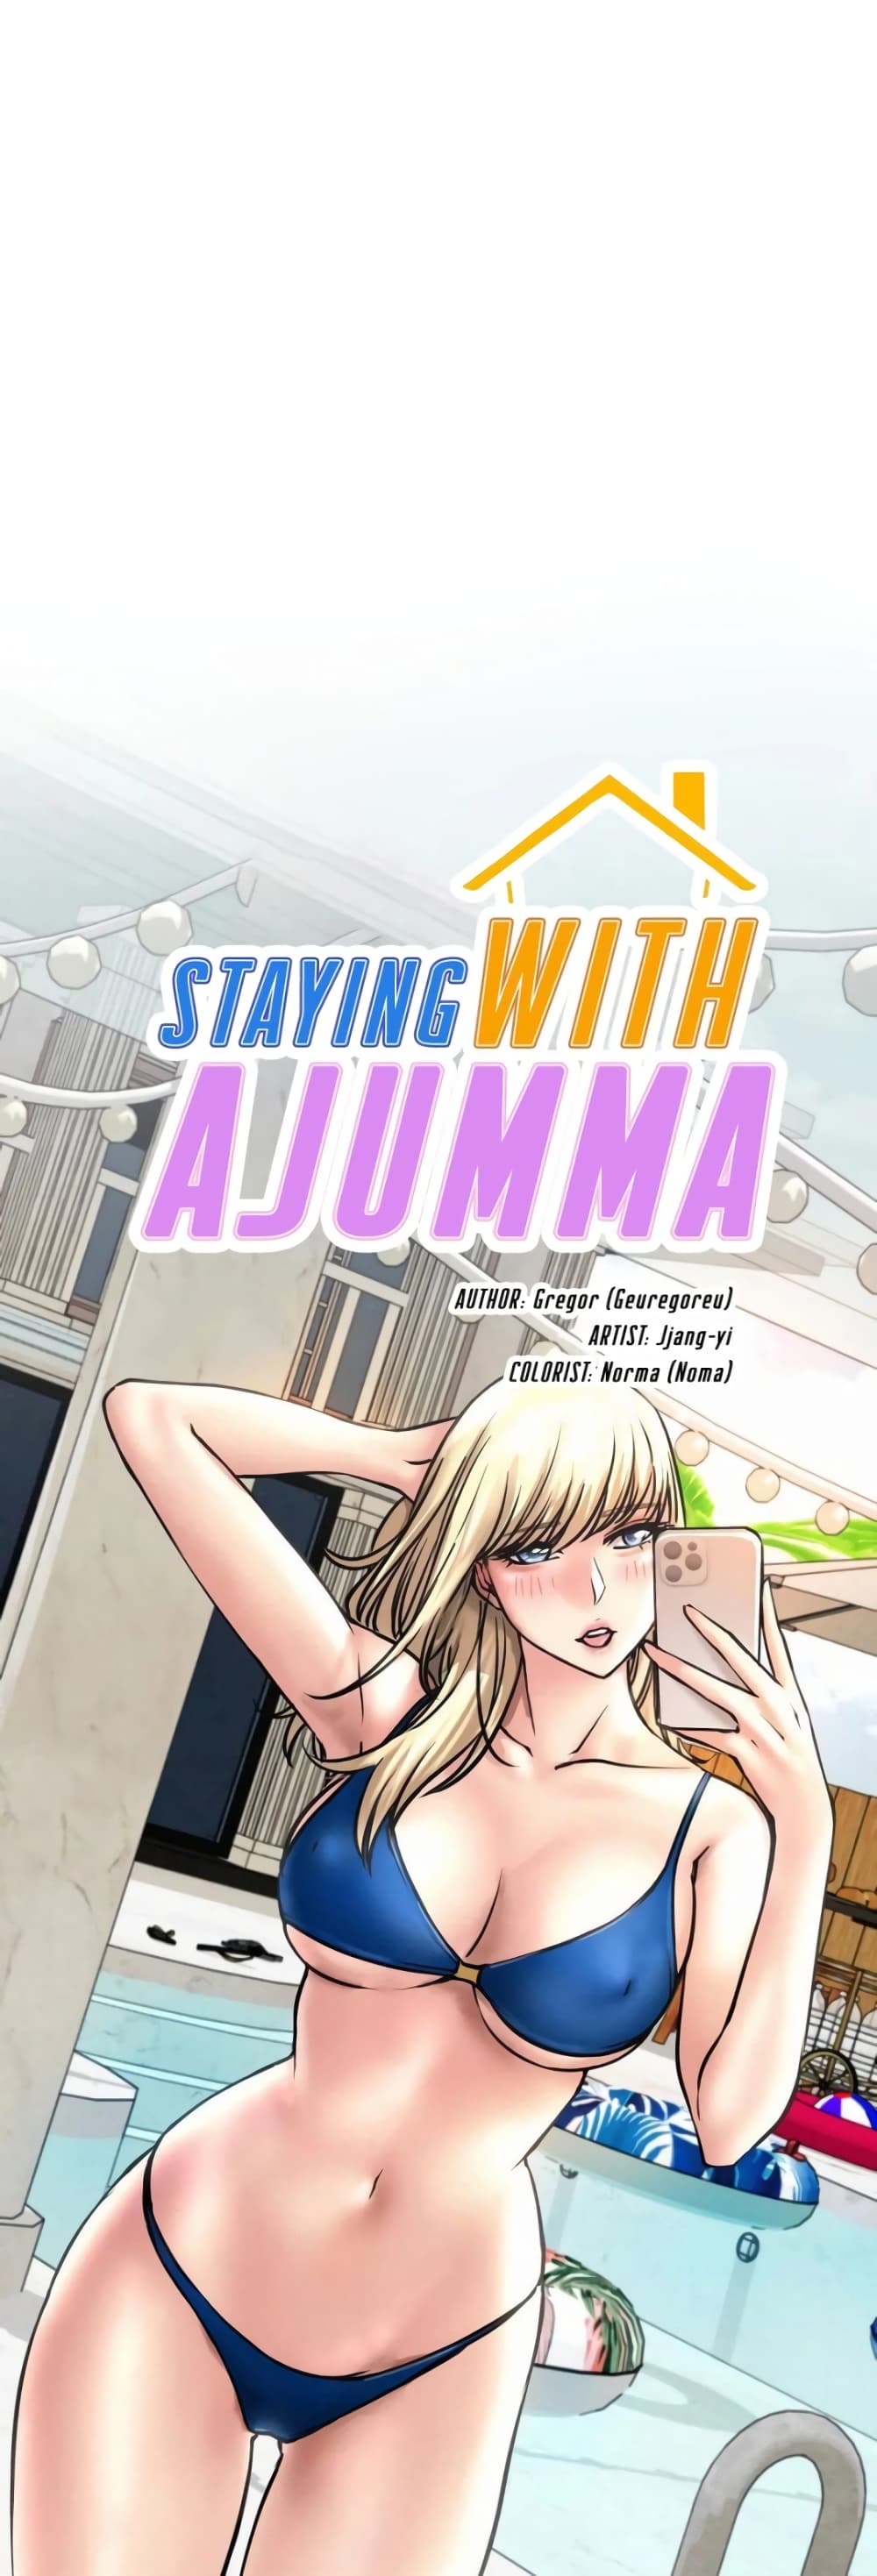 Staying with Ajumma 41-41